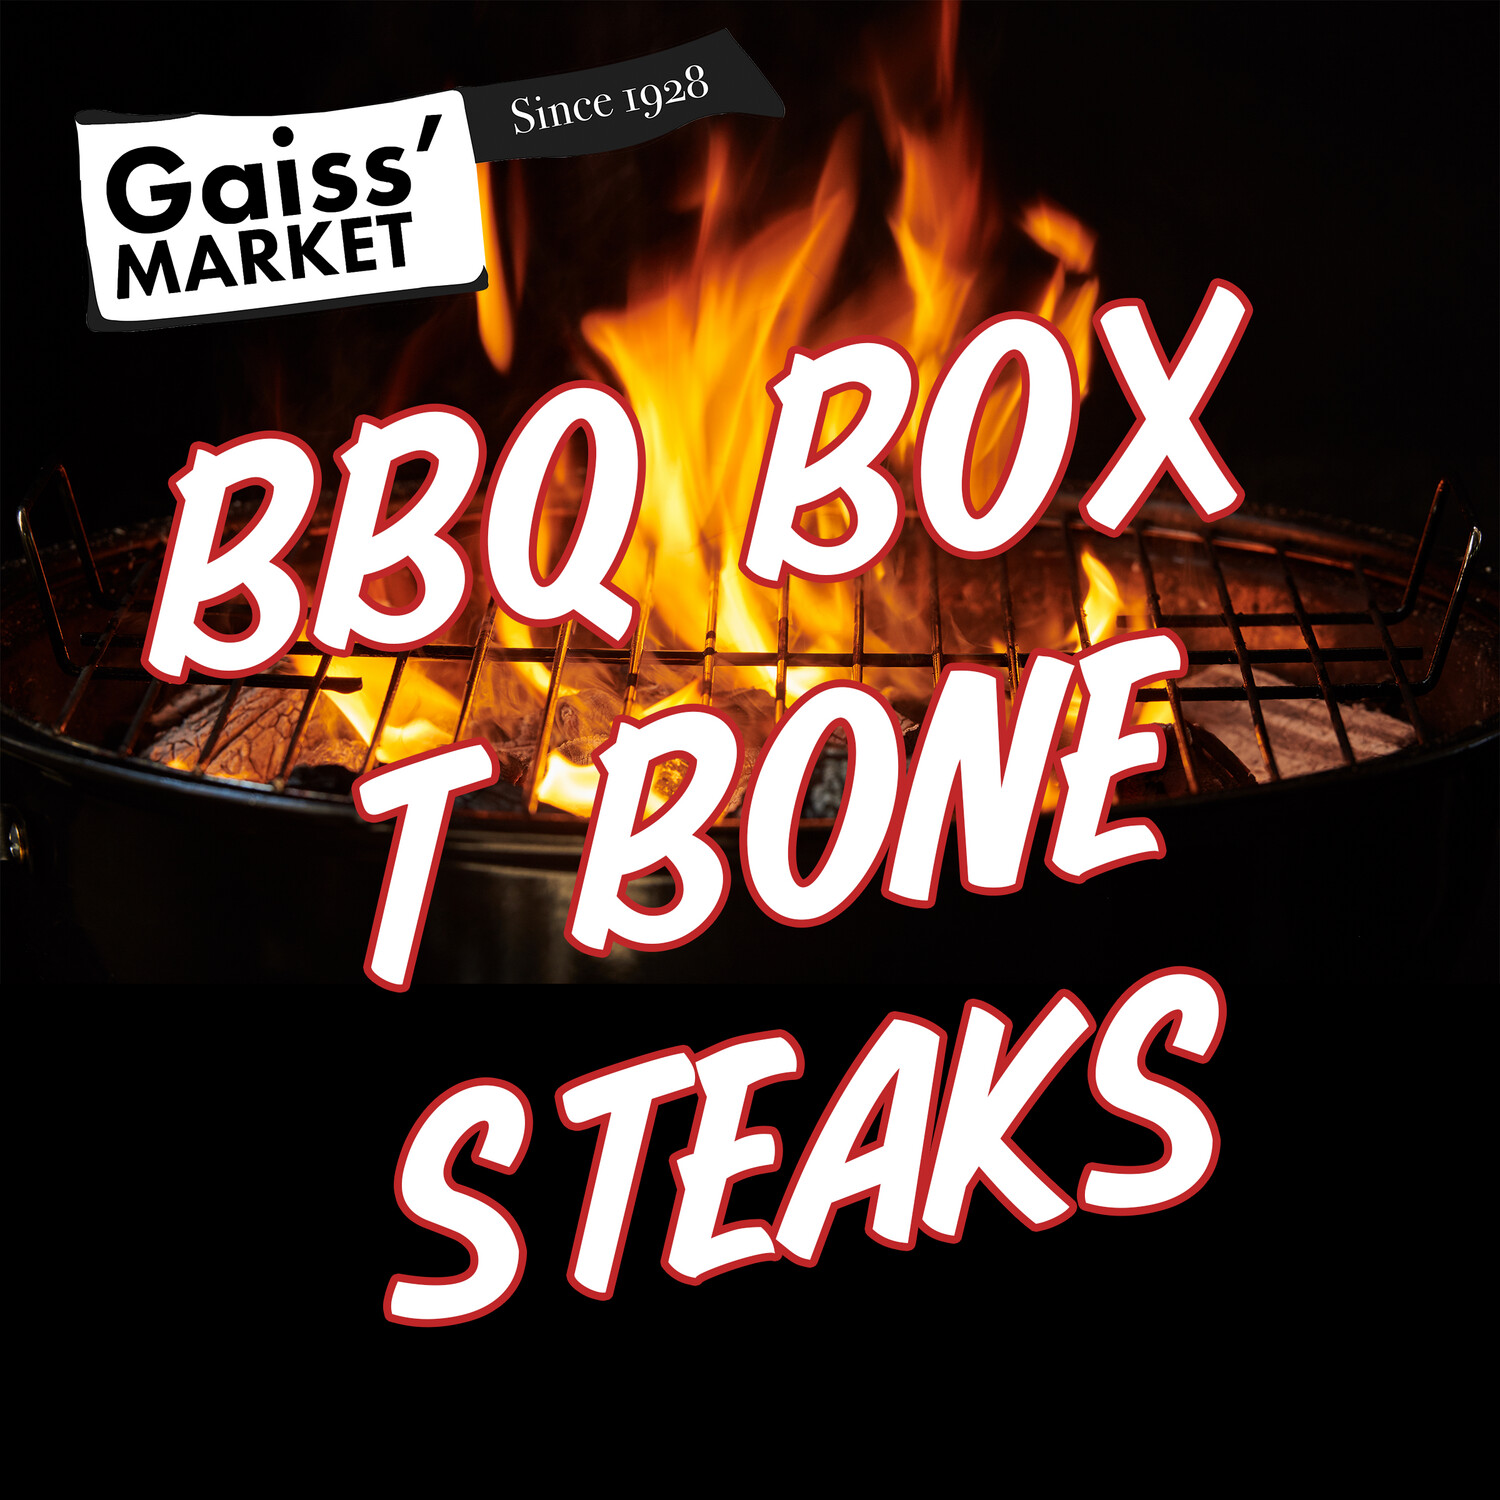 BBQ Box T Bone Steaks